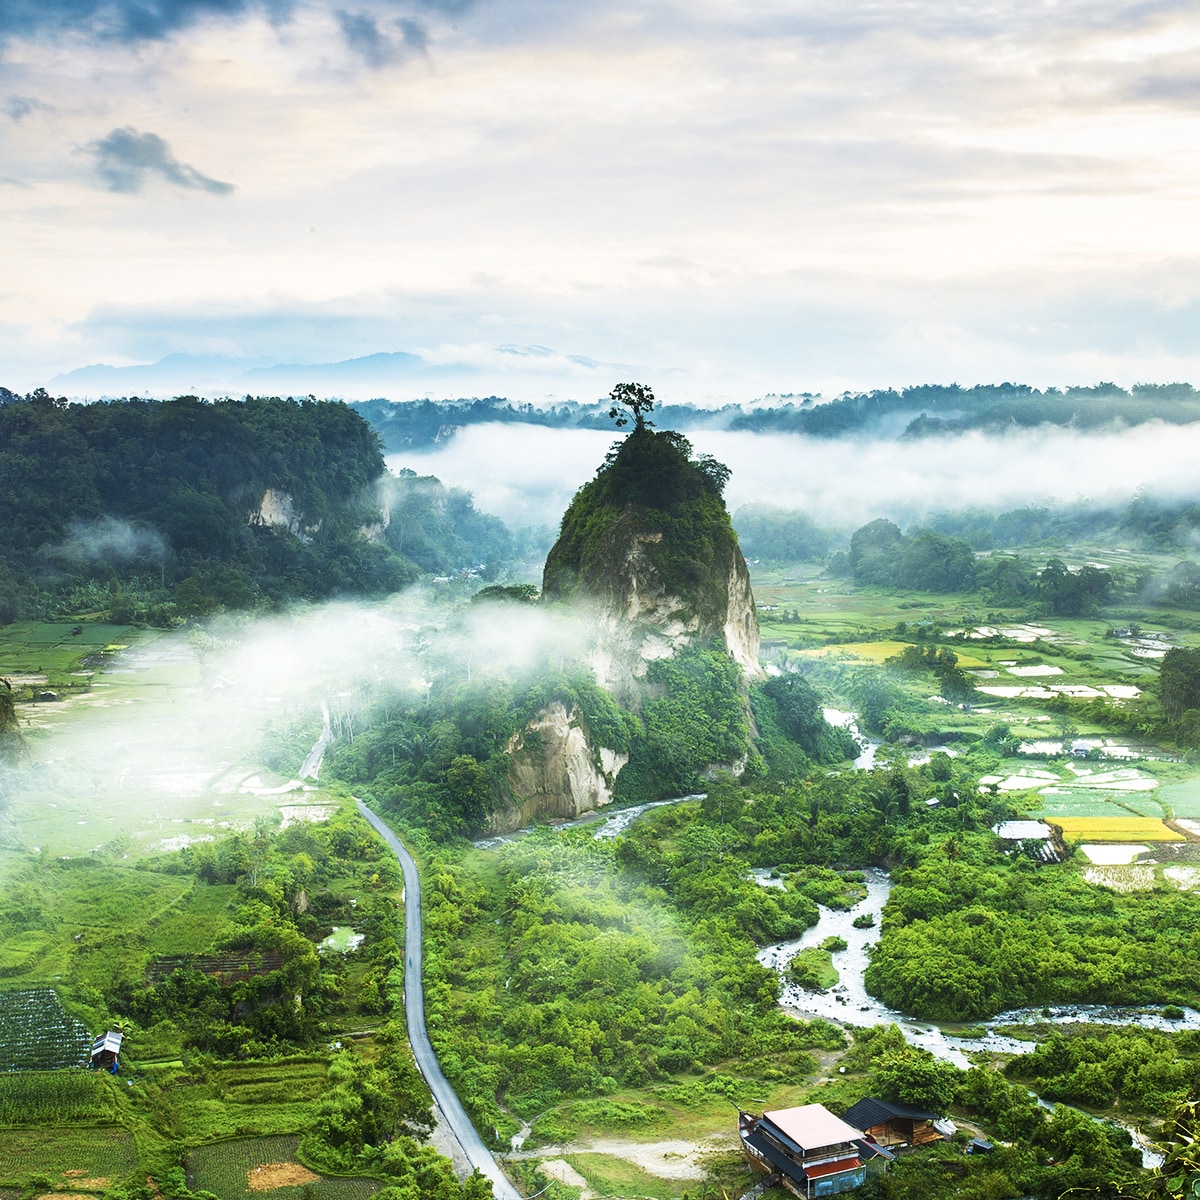 Ngarai Sianok: West Sumatra's Breathtaking Beauty